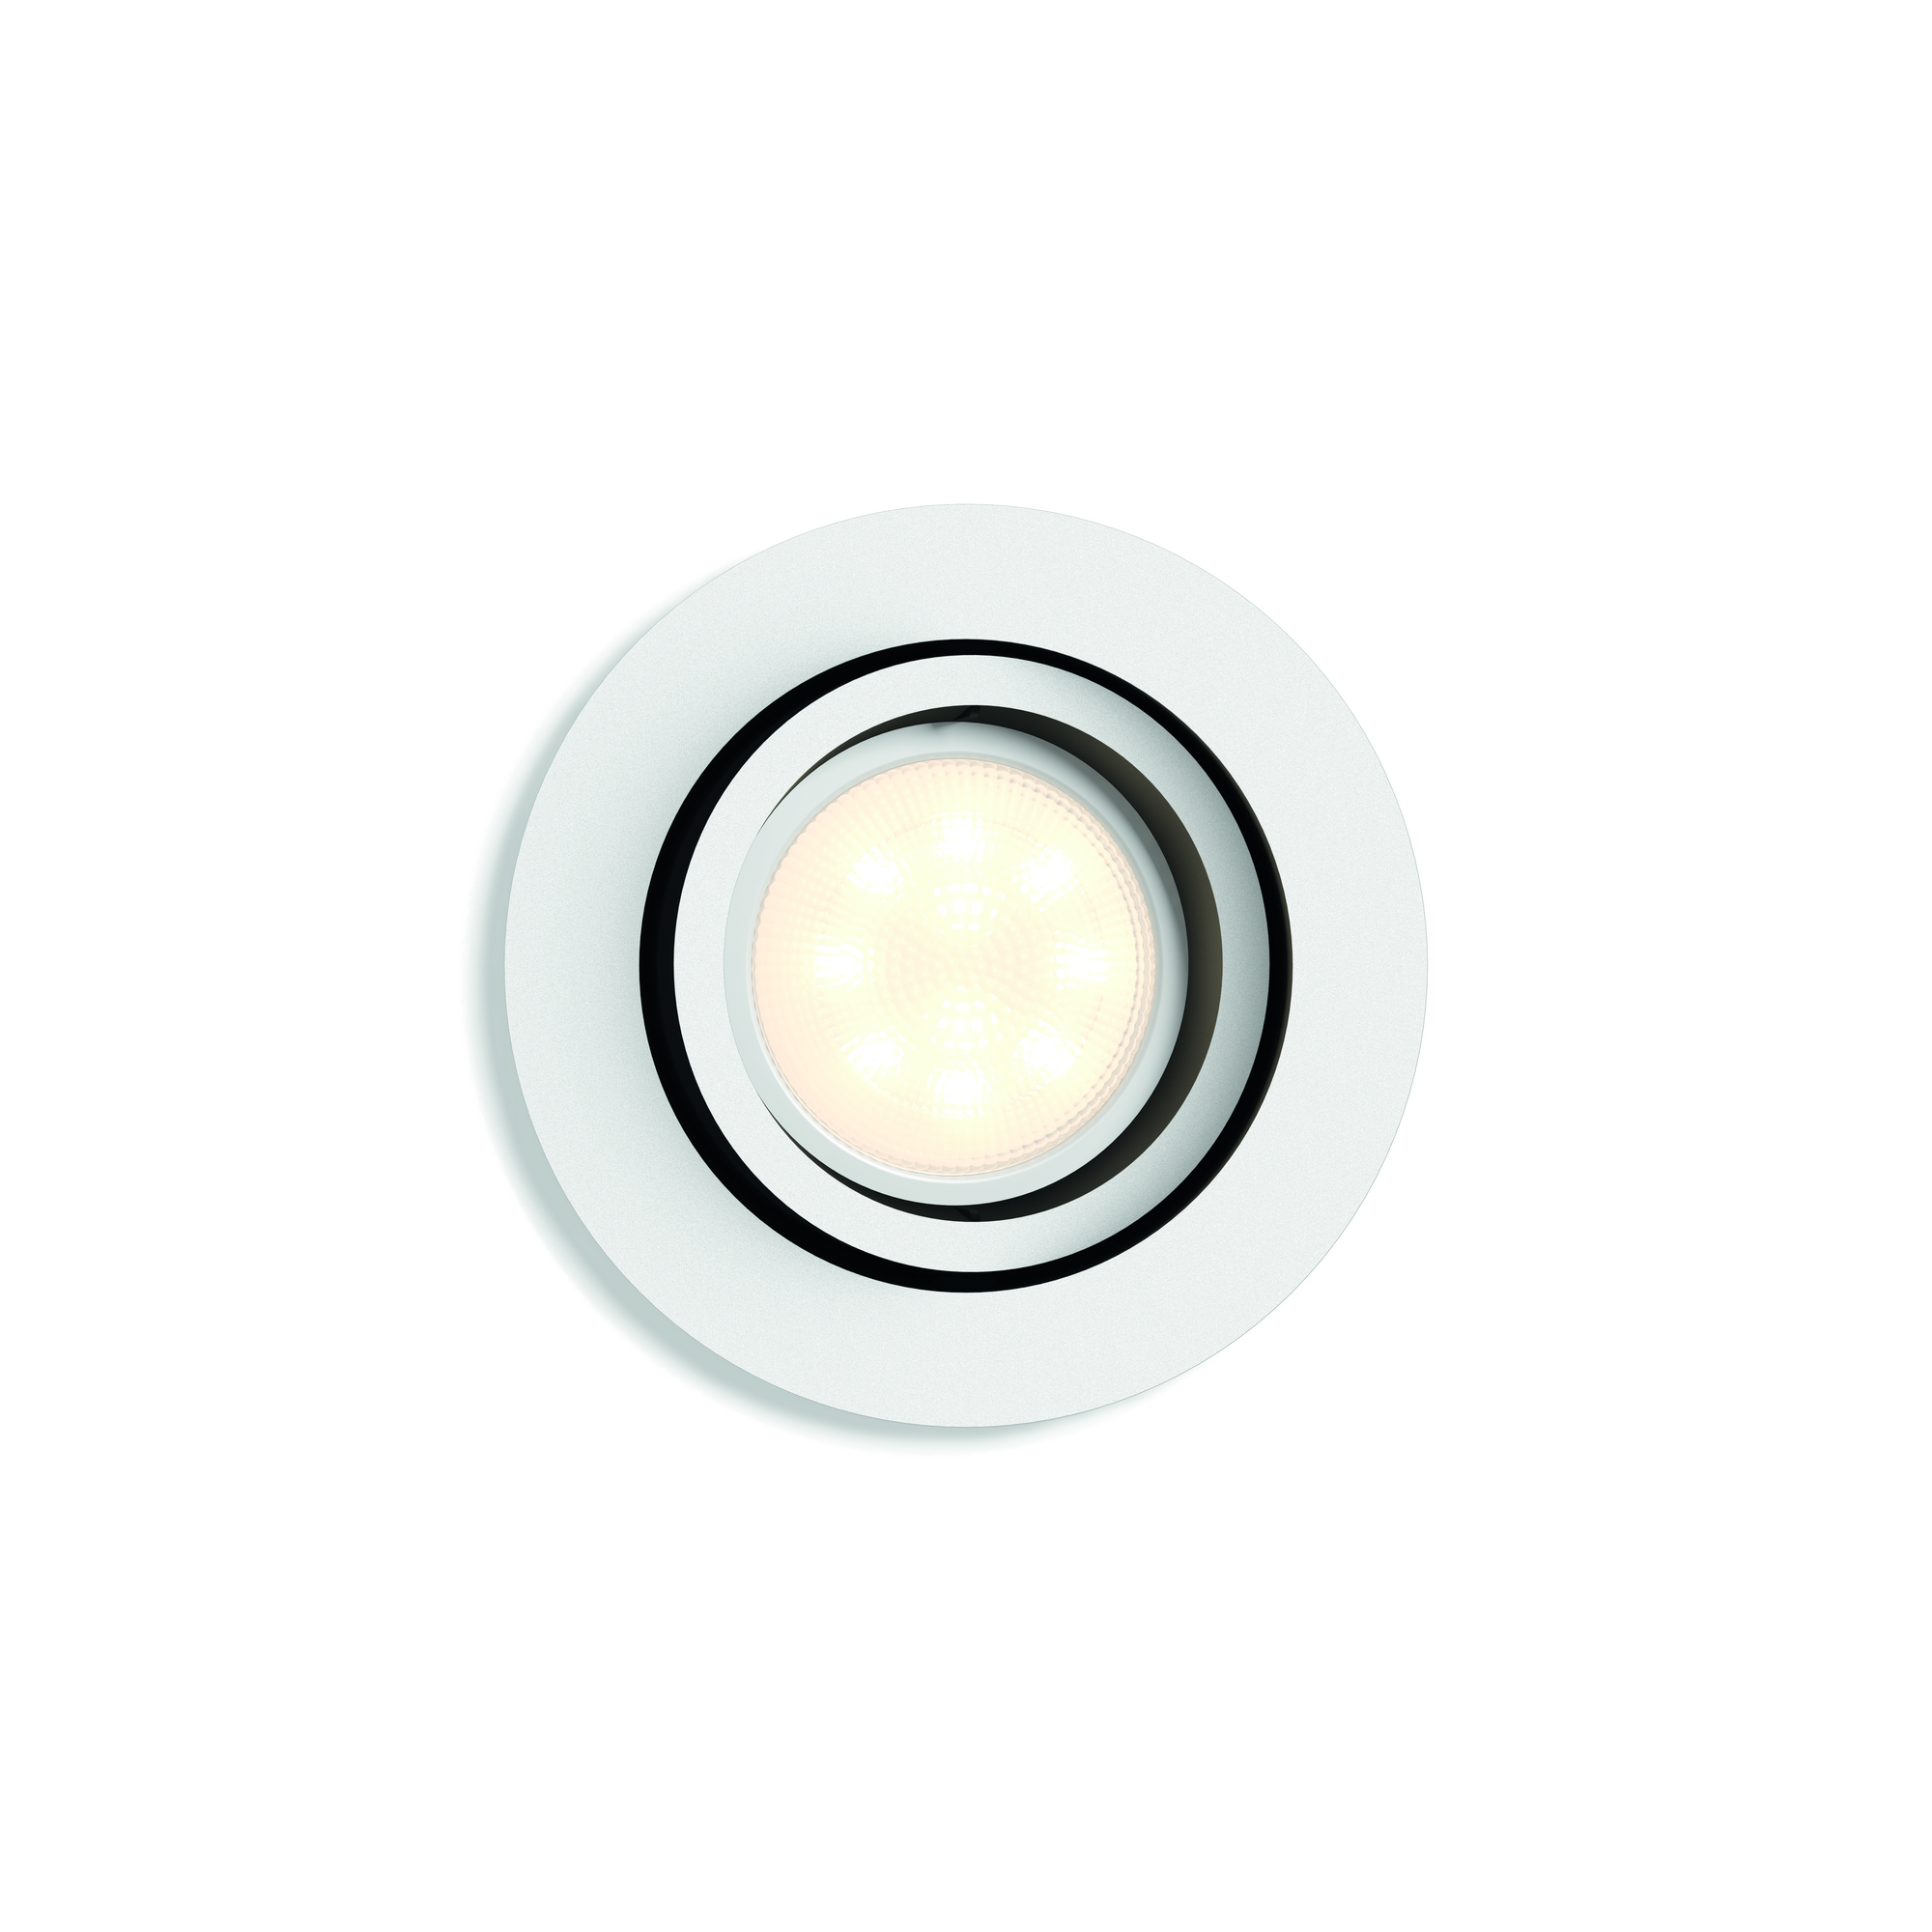 LED-Einbauspot Erweiterung "Hue" Milliskin rund weiß 250 lm + product picture